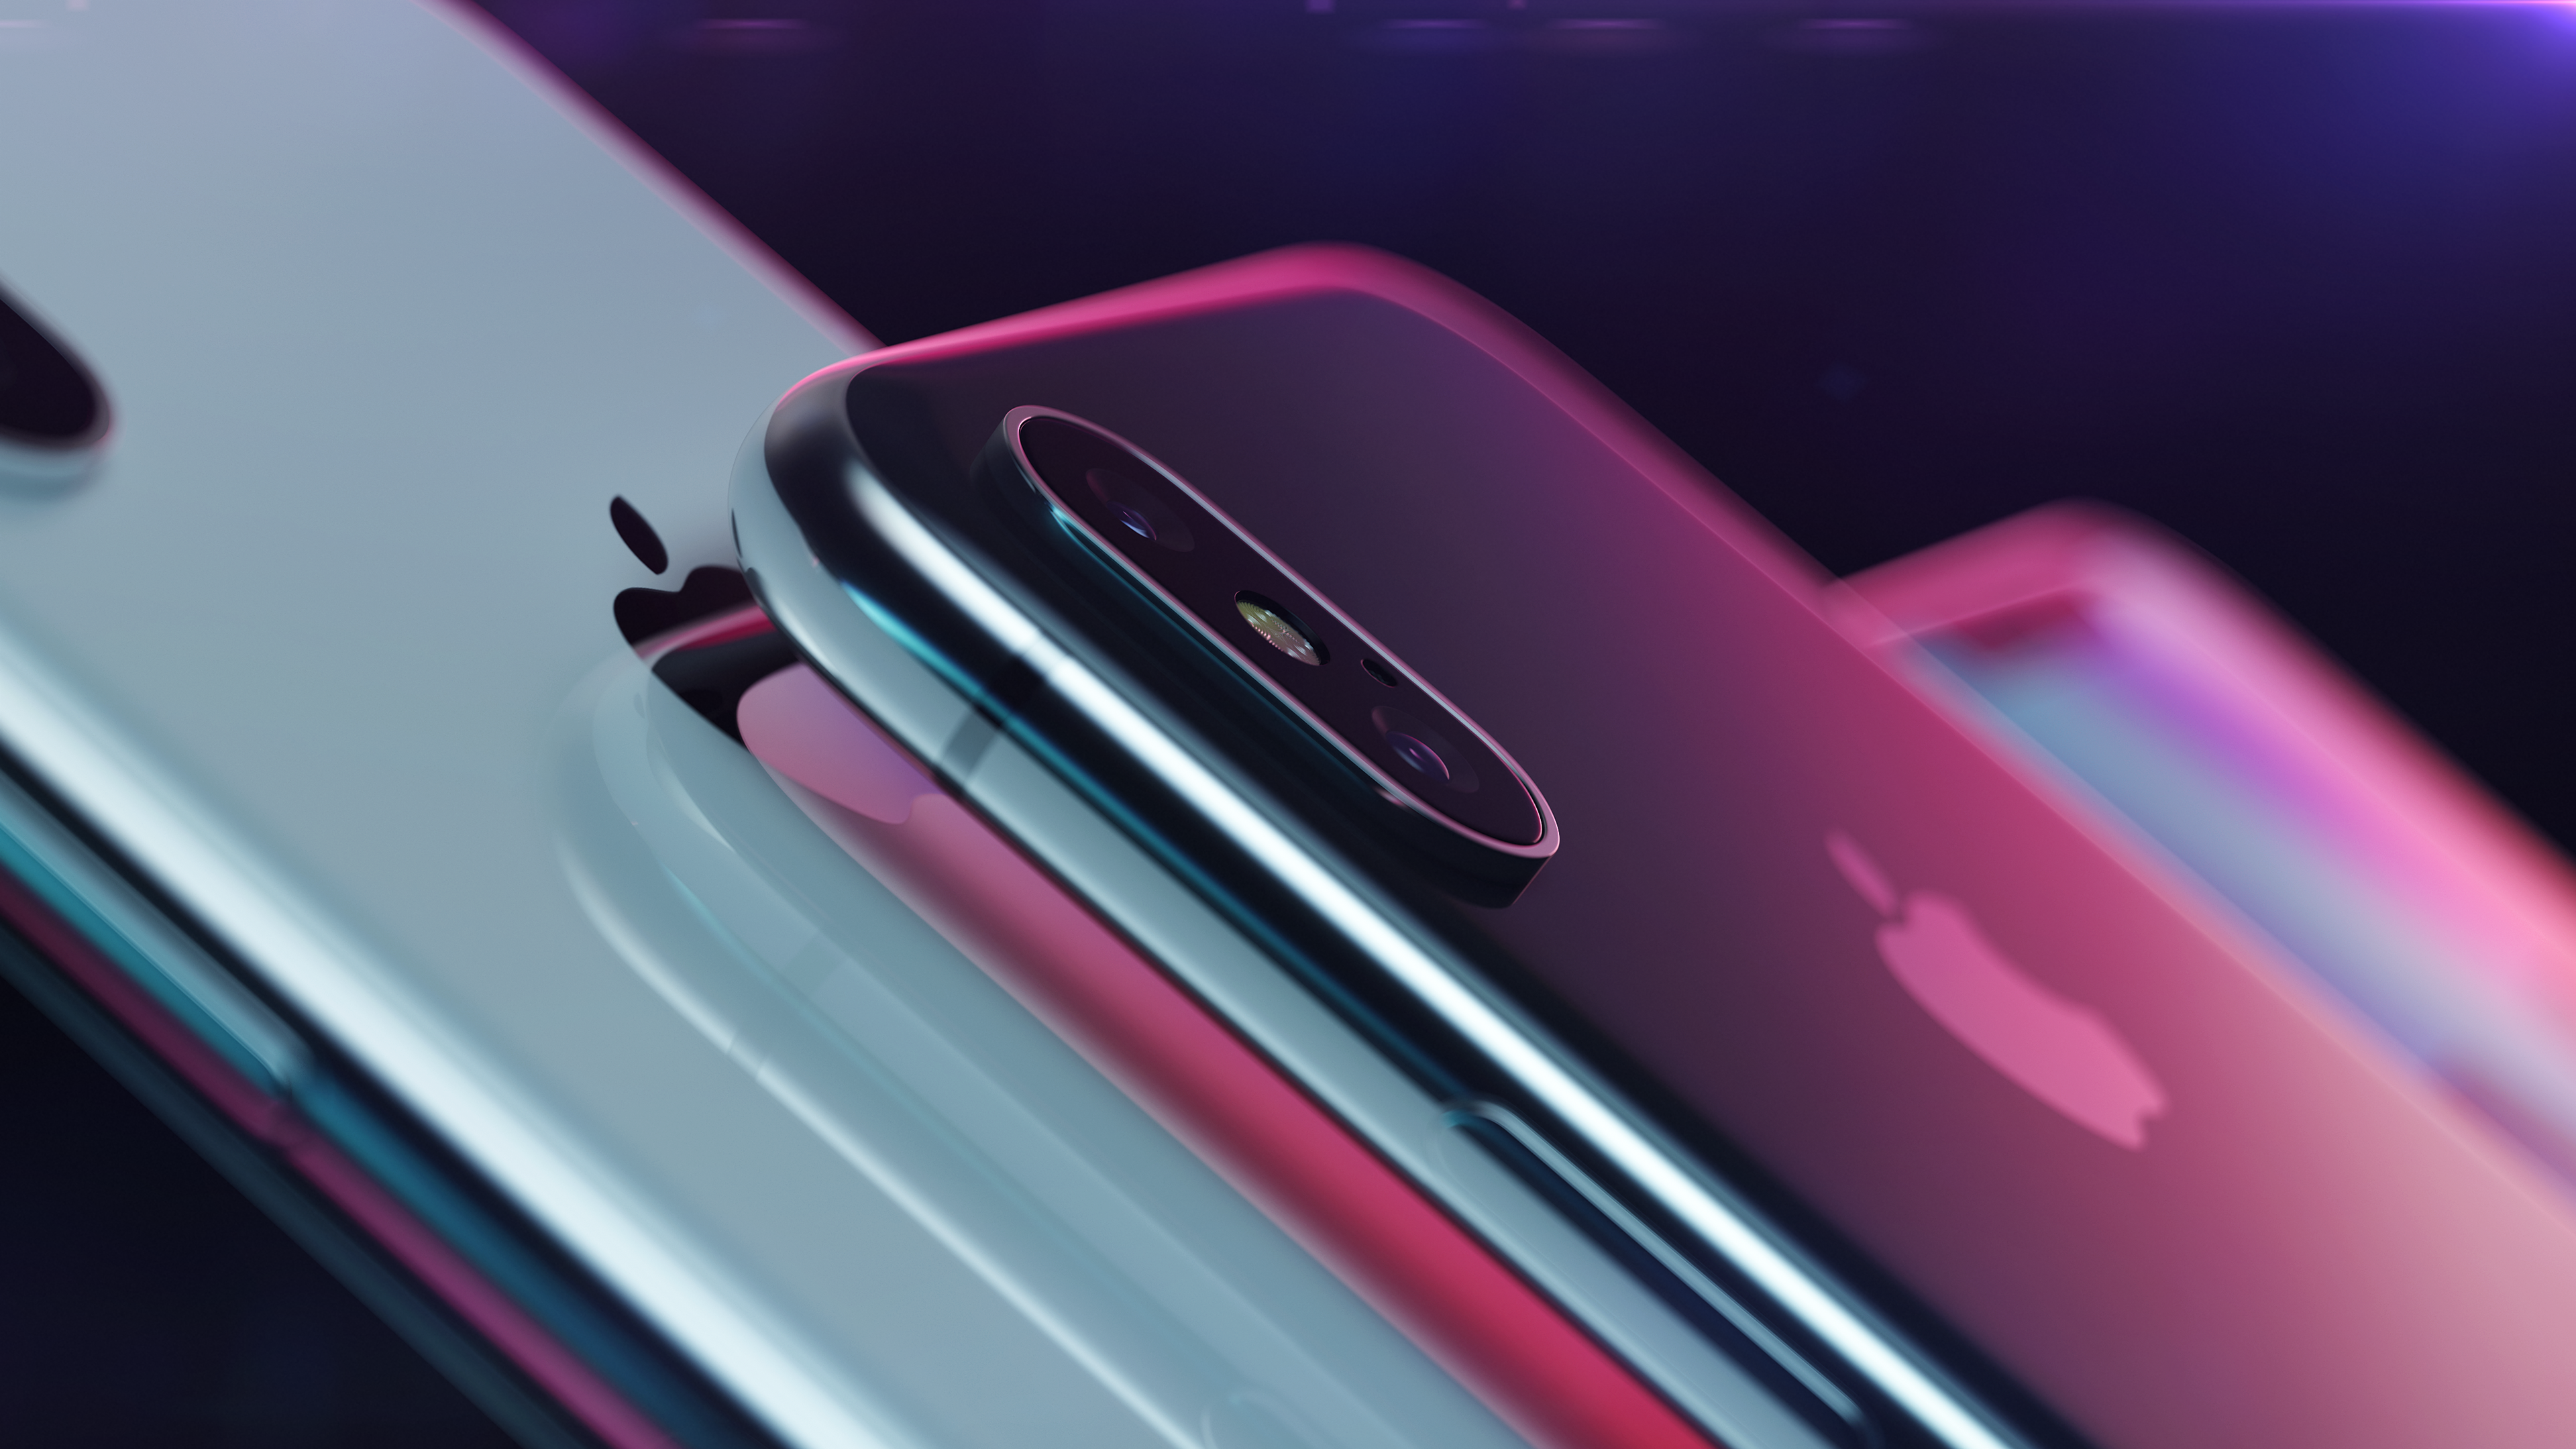 iphone 10 wallpaper hd,pink,magenta,purple,gadget,technology